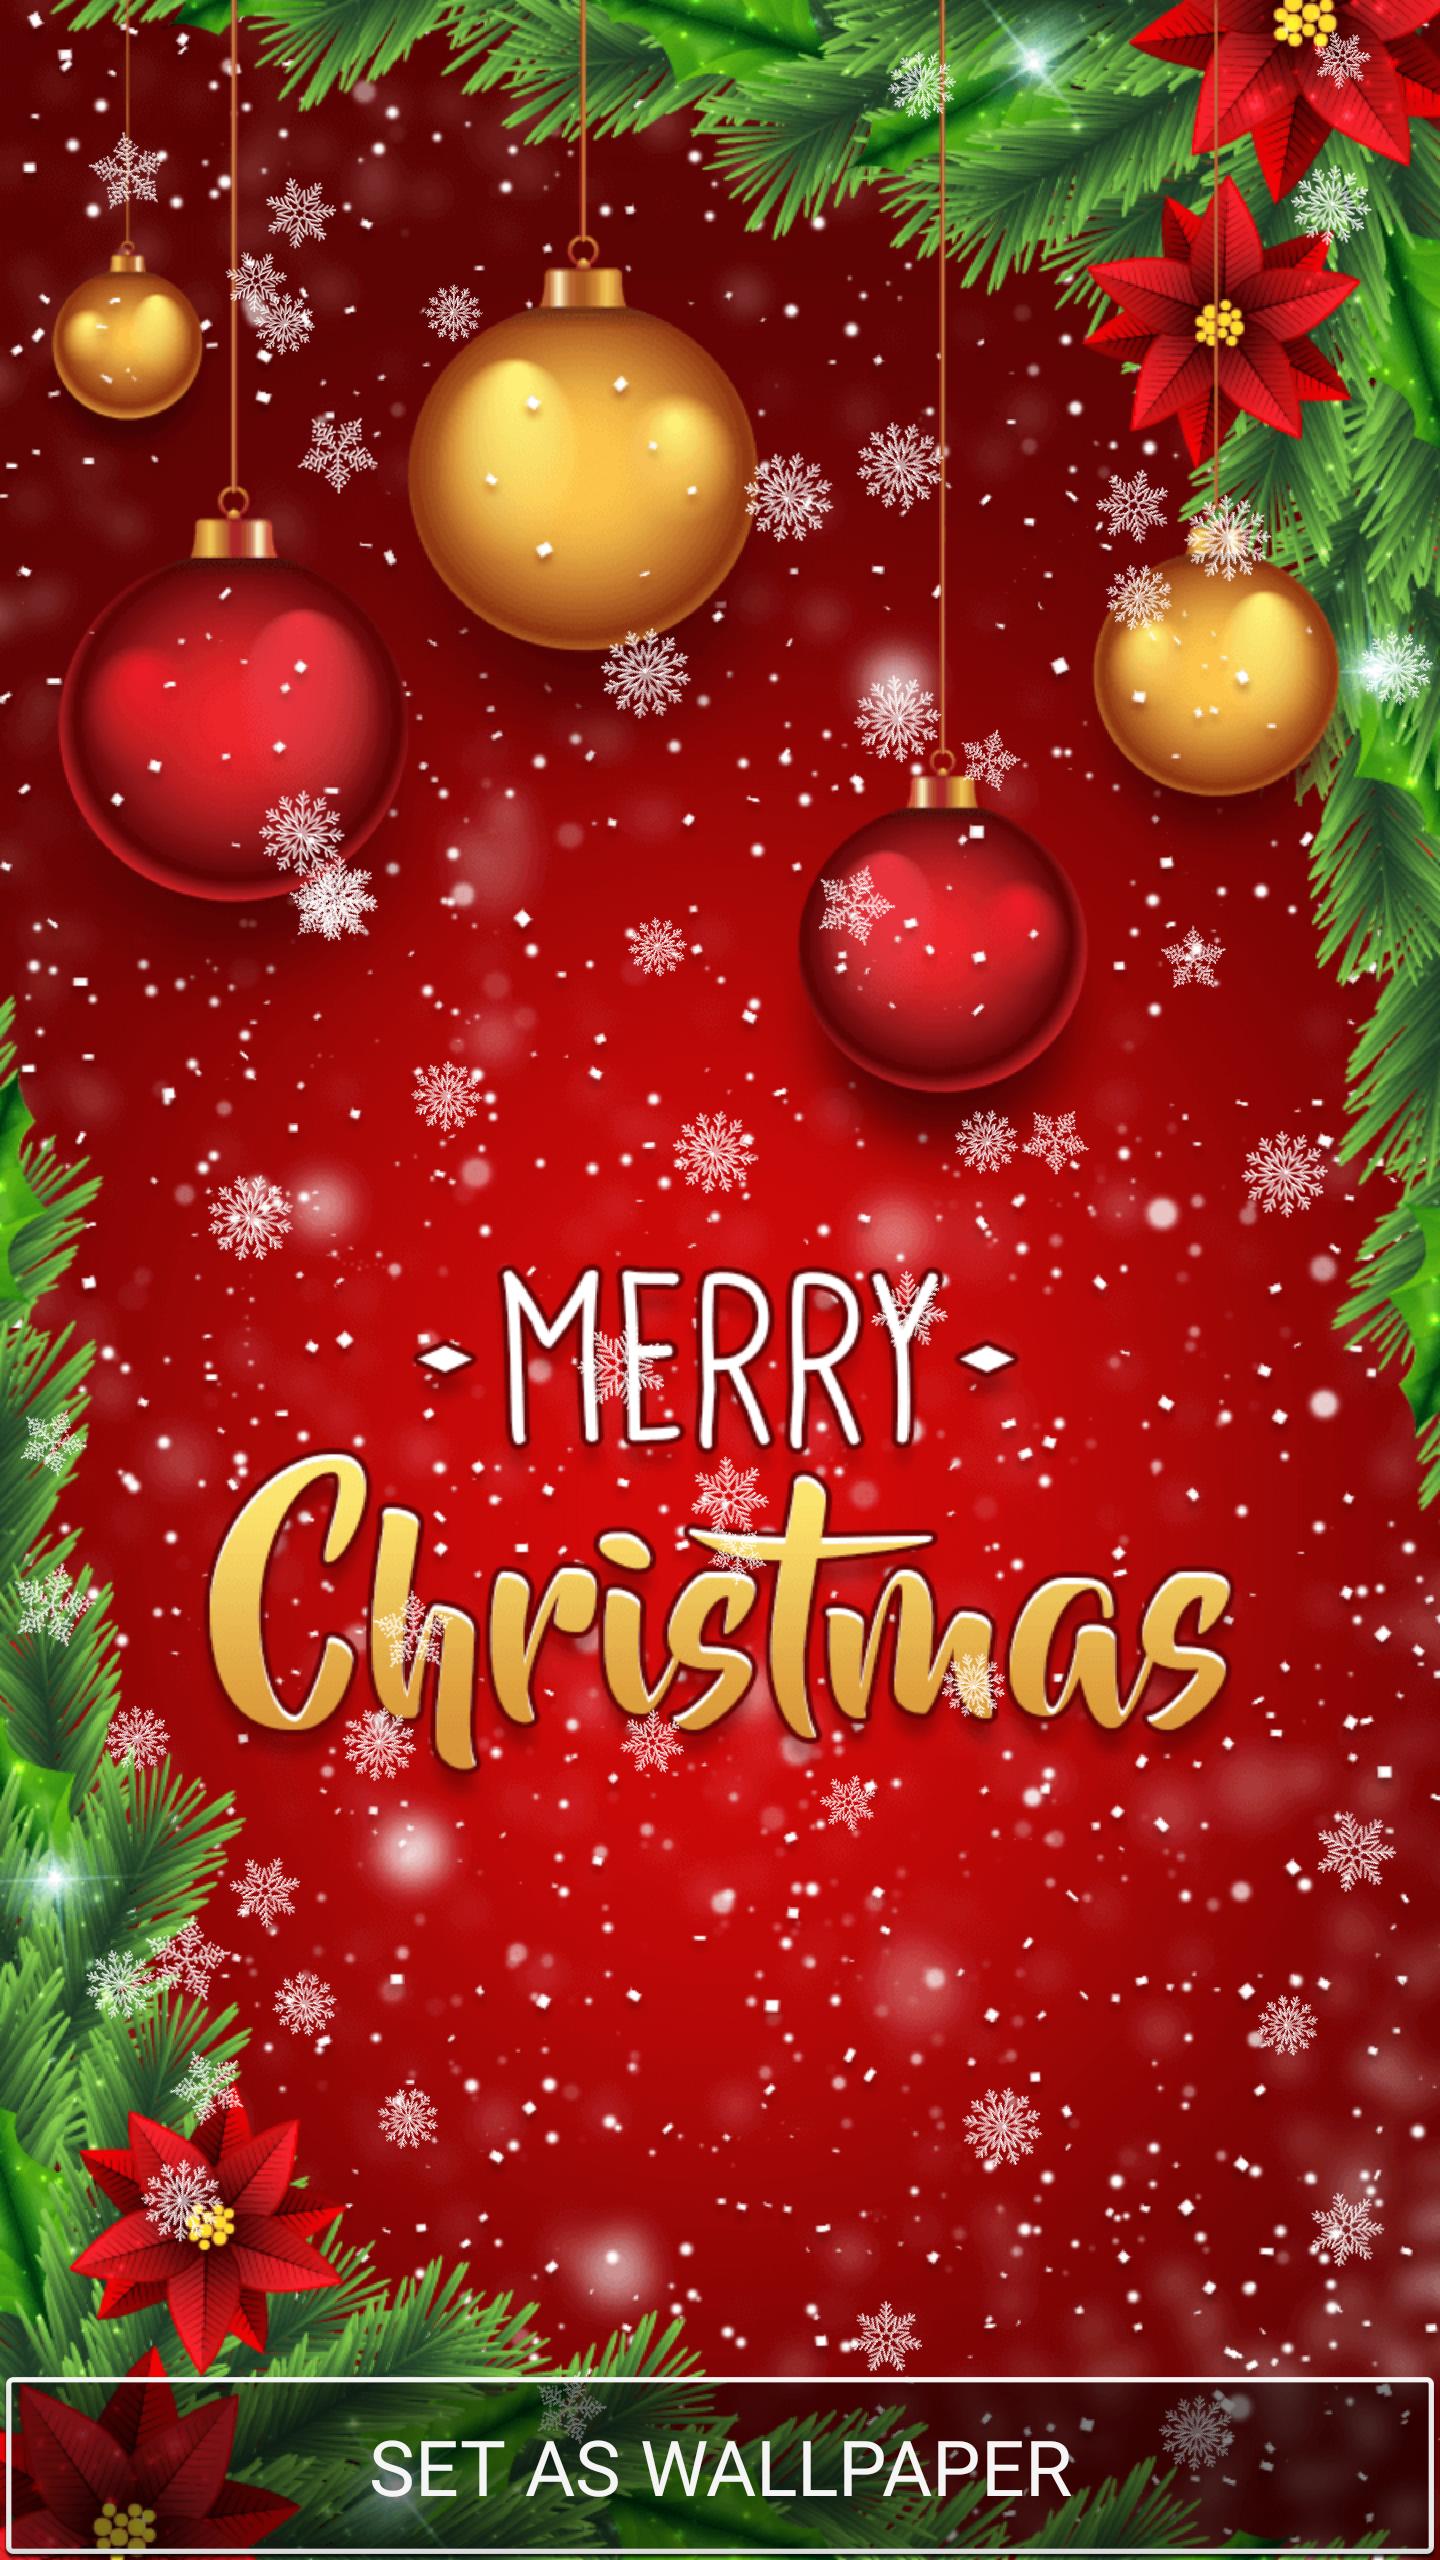 Sfondi Natalizi Gratuiti.Sfondi Animati Natale Gratis For Android Apk Download